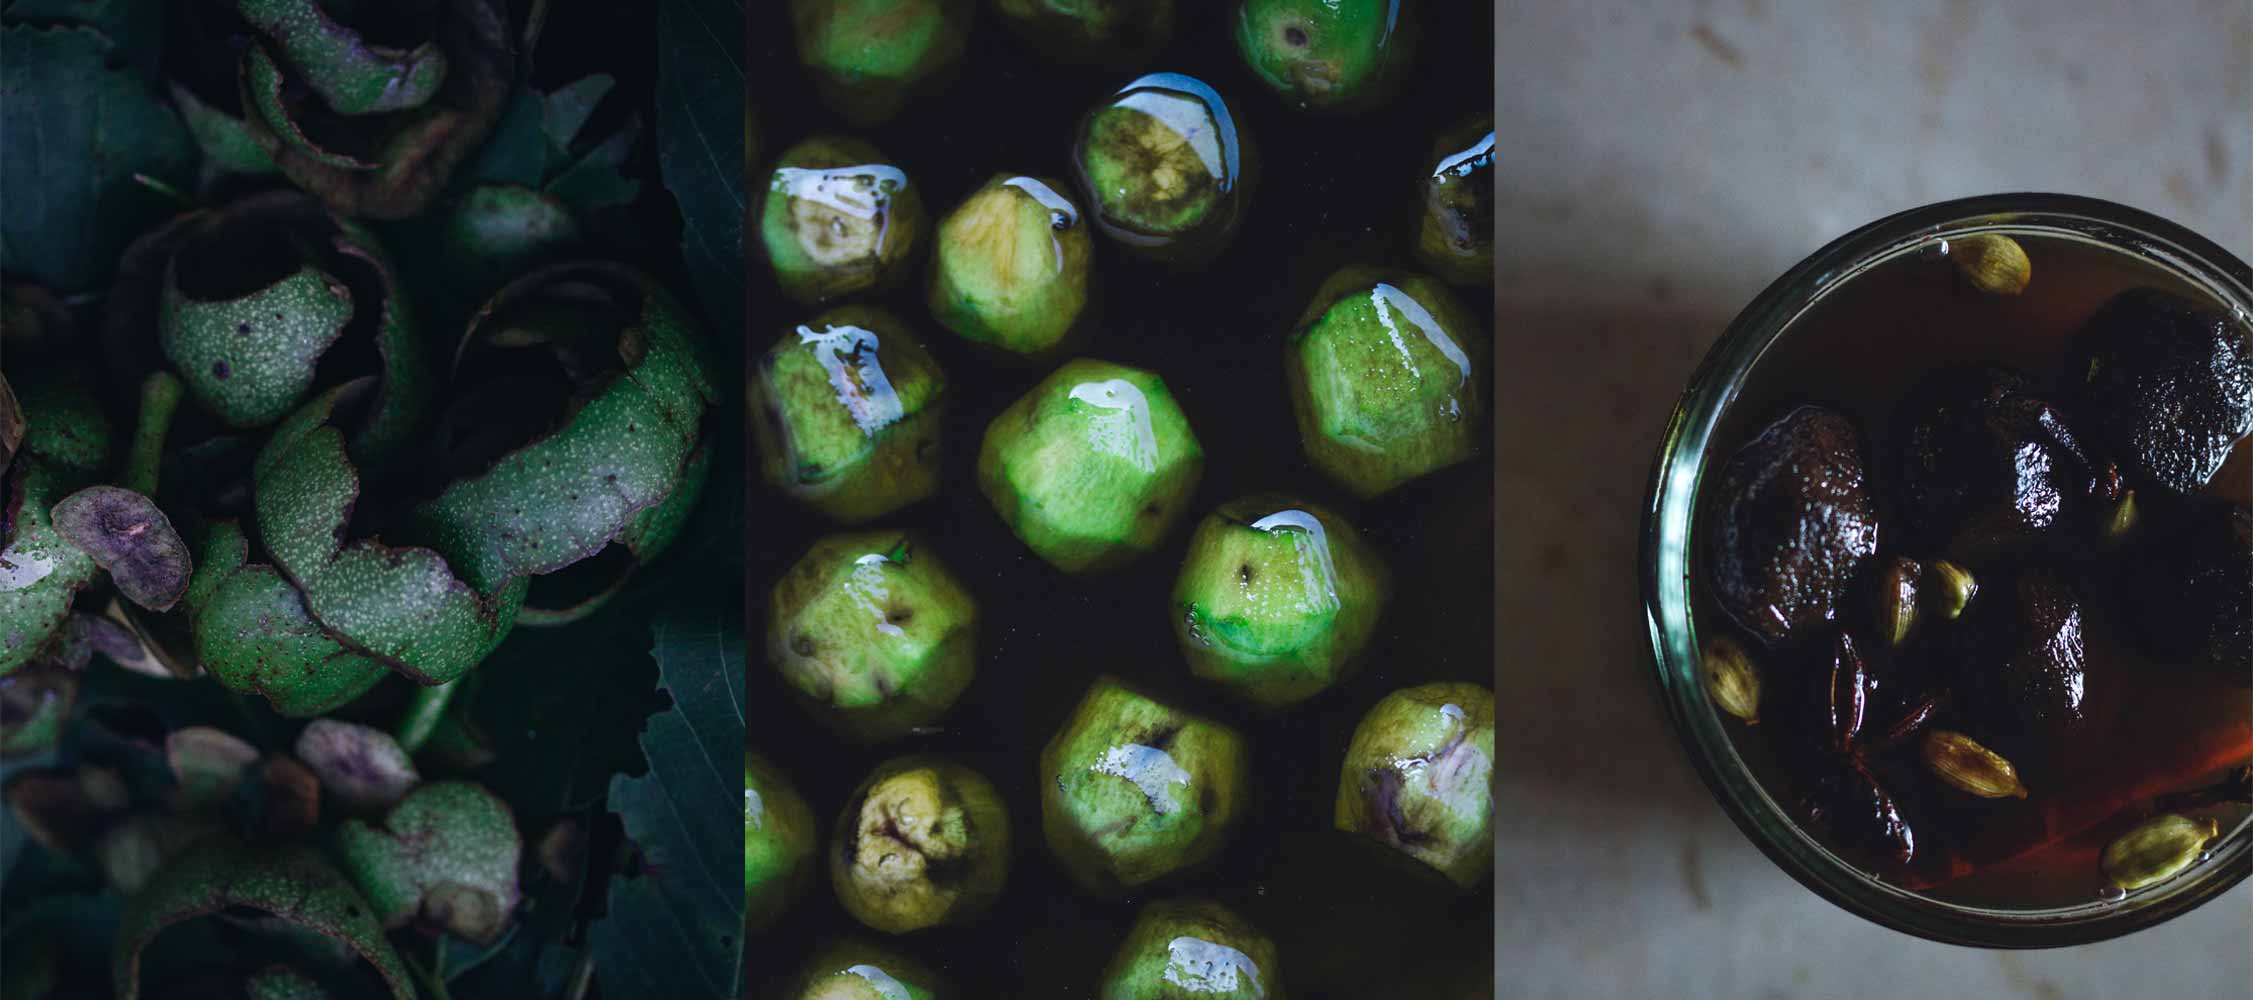 Green walnuts preserve